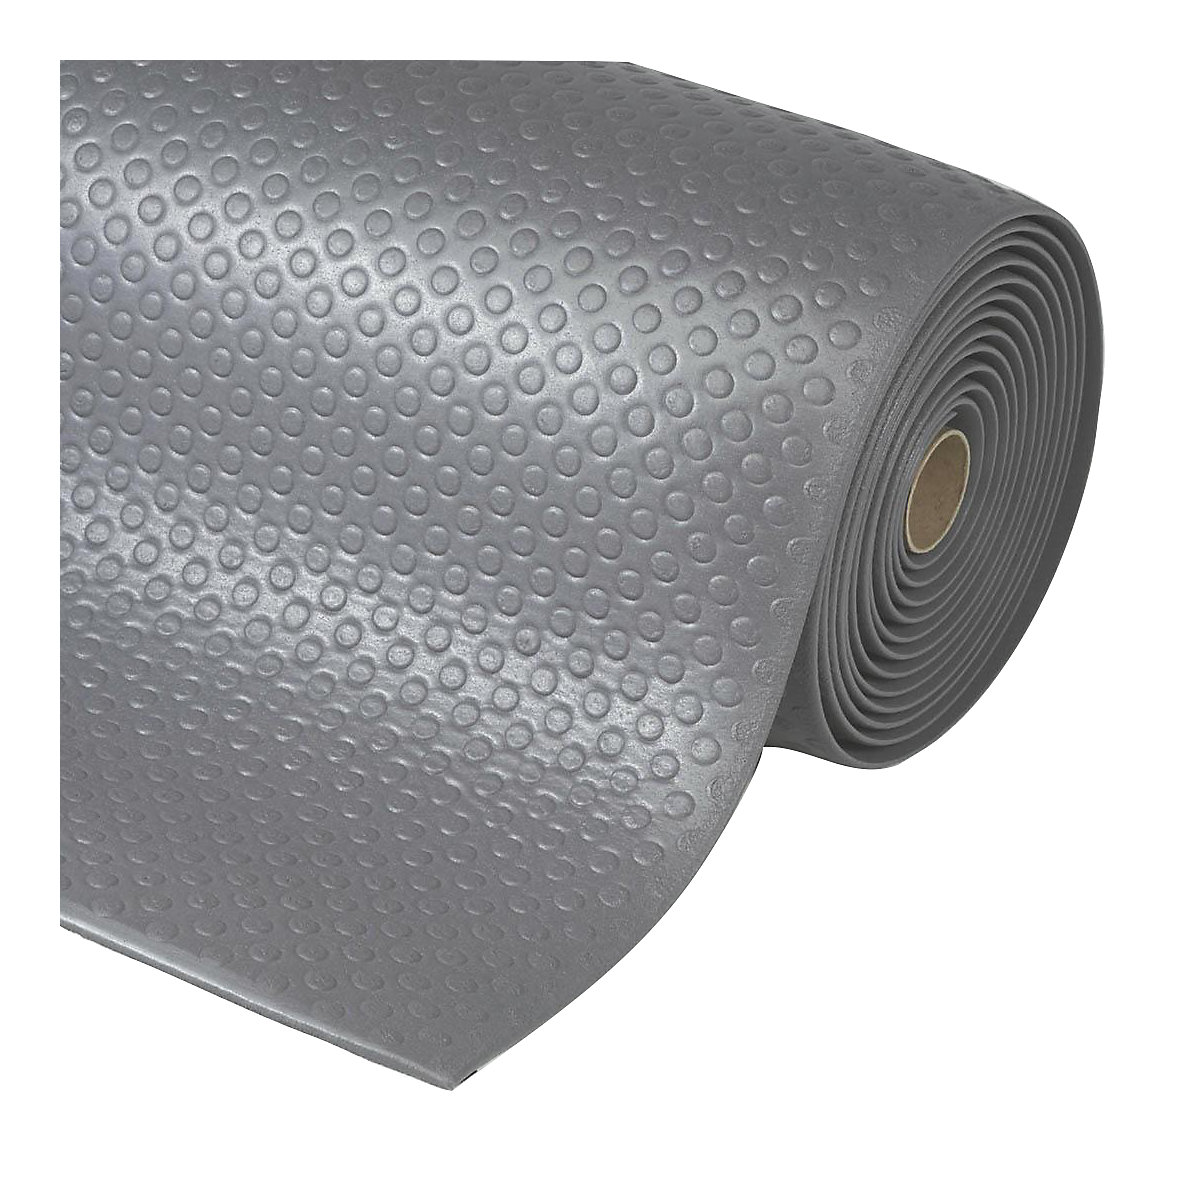 Bubble Sof-Tred™ anti-fatigue matting – NOTRAX